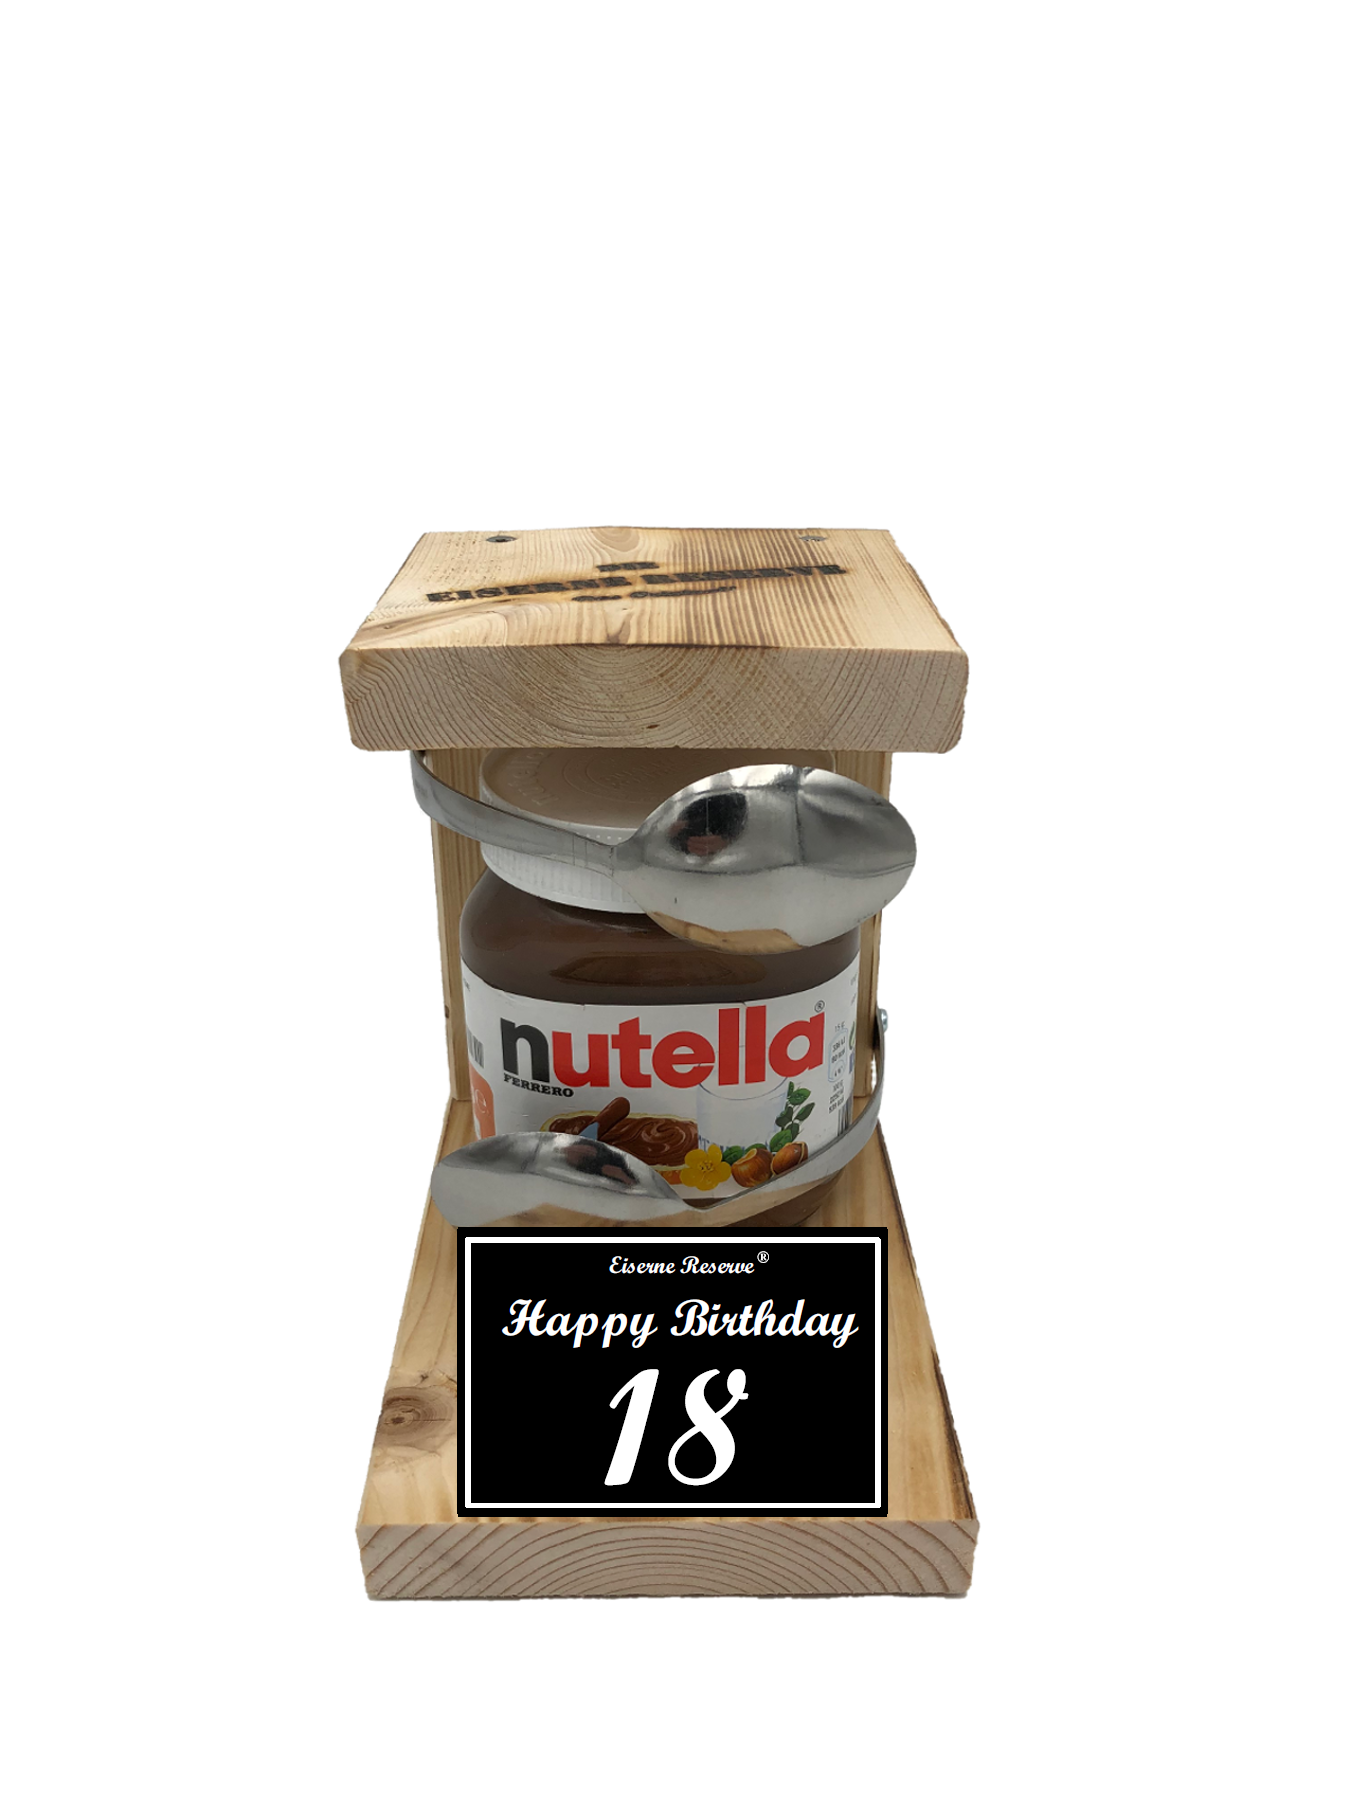 Geschenke zum 18. Geburtstag mit Nutella - DIE Geschenkidee